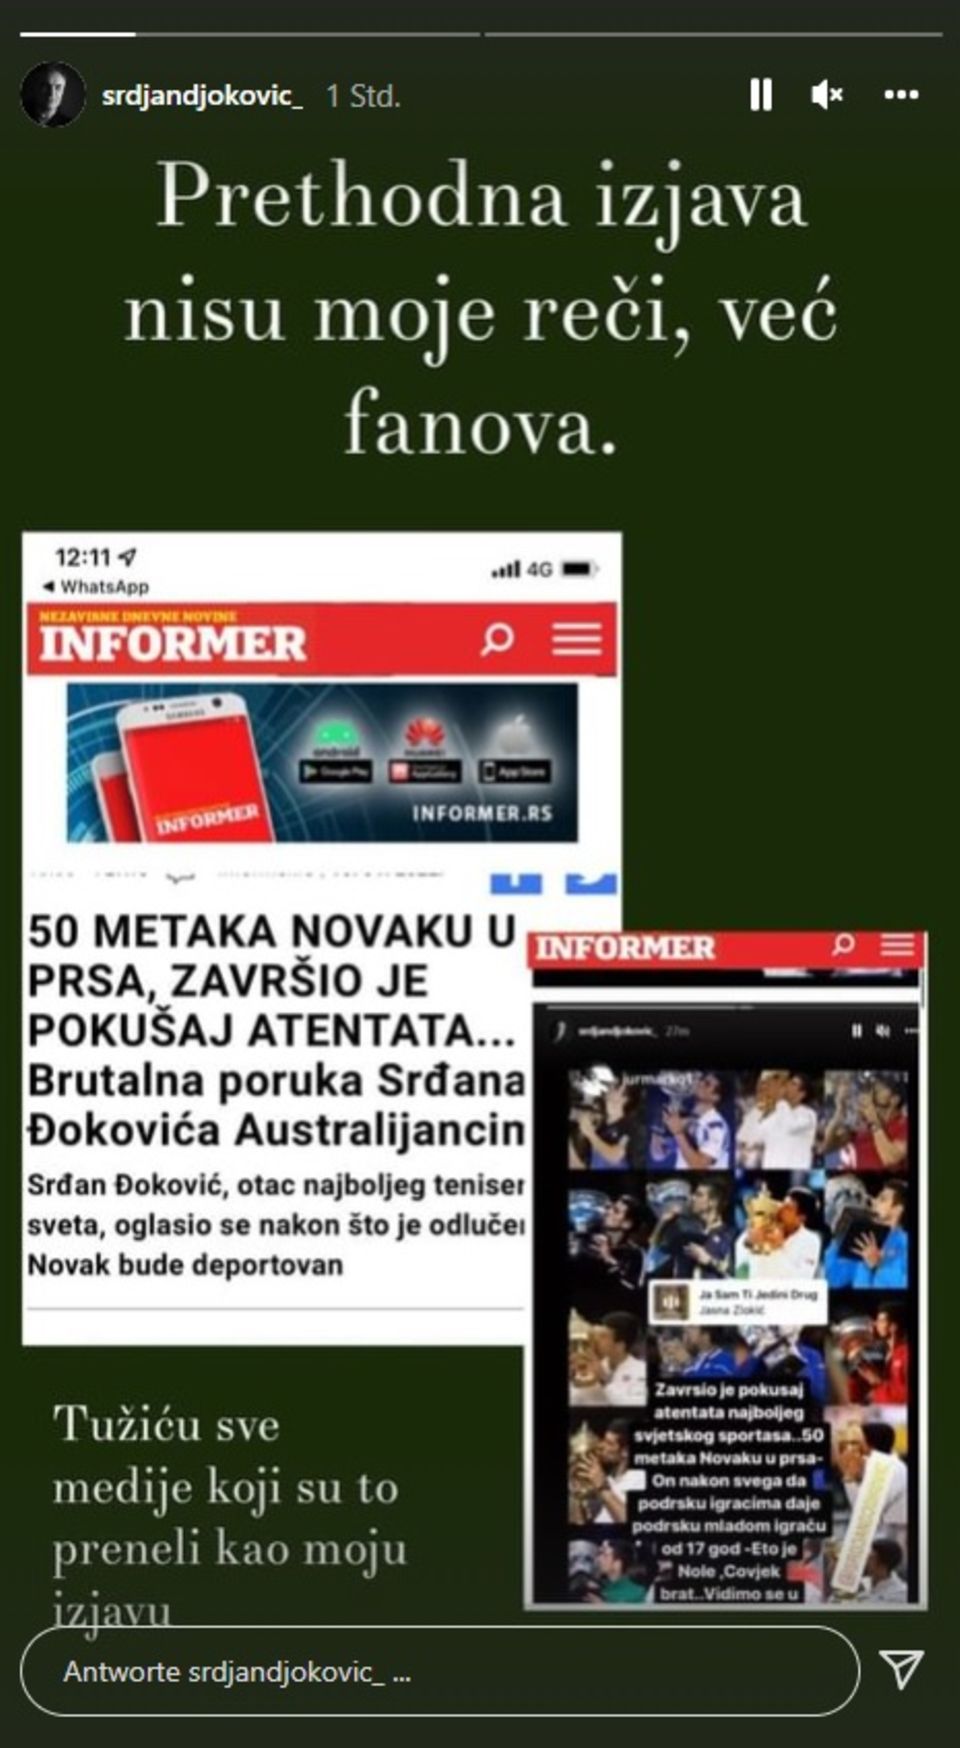 Ausreise von Tennis-Star: "Attentat" auf Djokovic: Vater tobt vor Wut, Serbiens Regierung wirft Australien Lügen vor